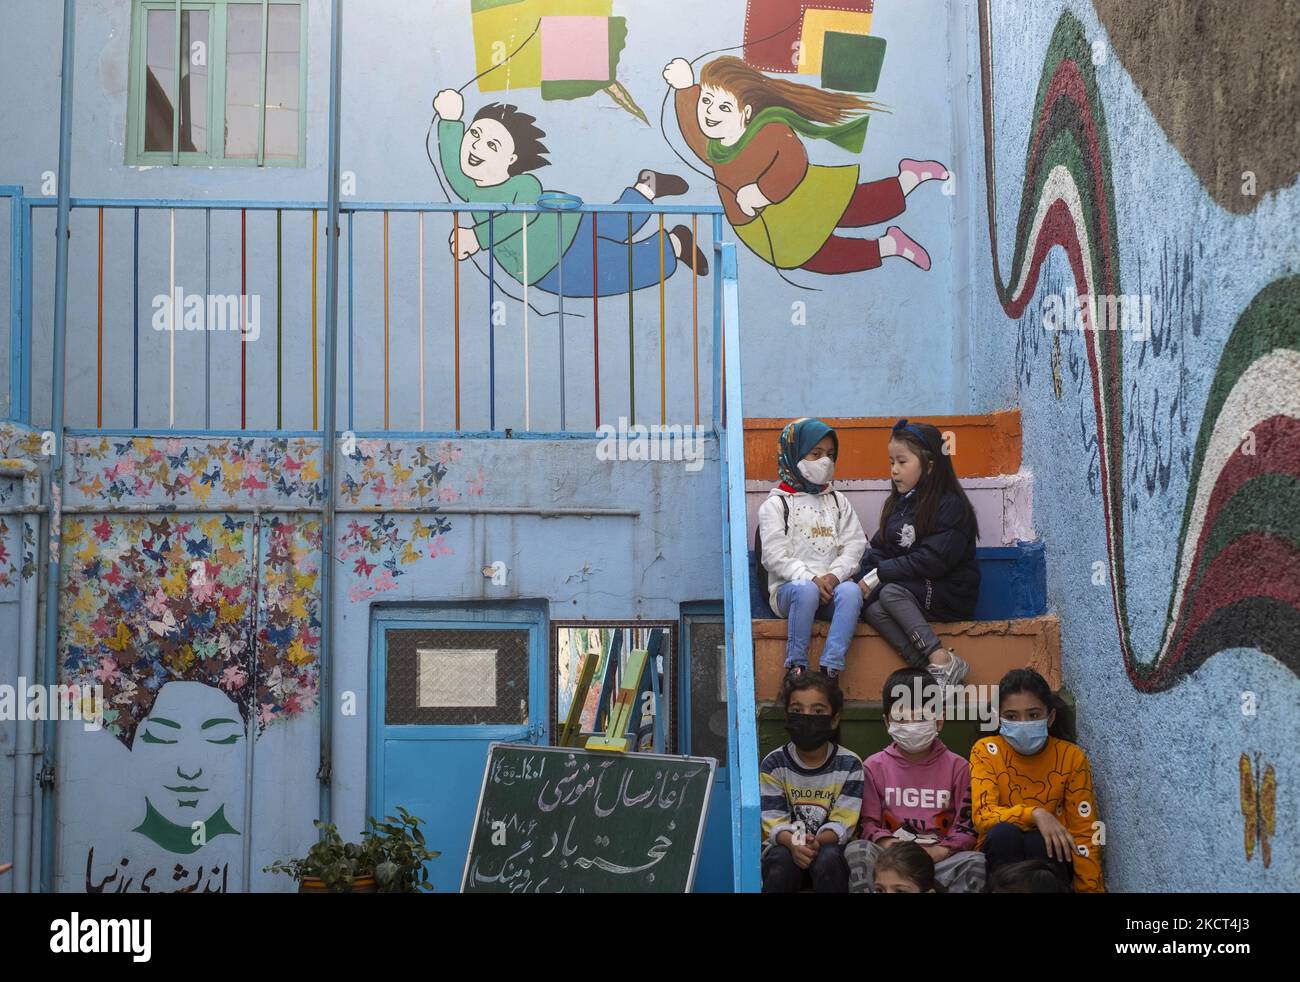 Gli scolari afghani rifugiati e le studentesse siedono sulle scale della scuola di Farhang nel primo giorno del nuovo anno accademico? Nel sud di Teheran il 1 novembre 2021. La scuola di Farhang è stata fondata nel 2000 dal rifugiato afgano Nader Mousavi che si è laureato in sociologia presso l'Università di Teheran, per i bambini rifugiati afghani, E ora due anni dopo l’inizio dell’epidemia COVID-19 in Iran, dove la scuola operava a tempo parziale, ha iniziato a funzionare a tempo pieno e le scolaresche e gli scolari afghani possono frequentare la scuola. Le famiglie non devono pagare i soldi per le tasse scolastiche come io Foto Stock